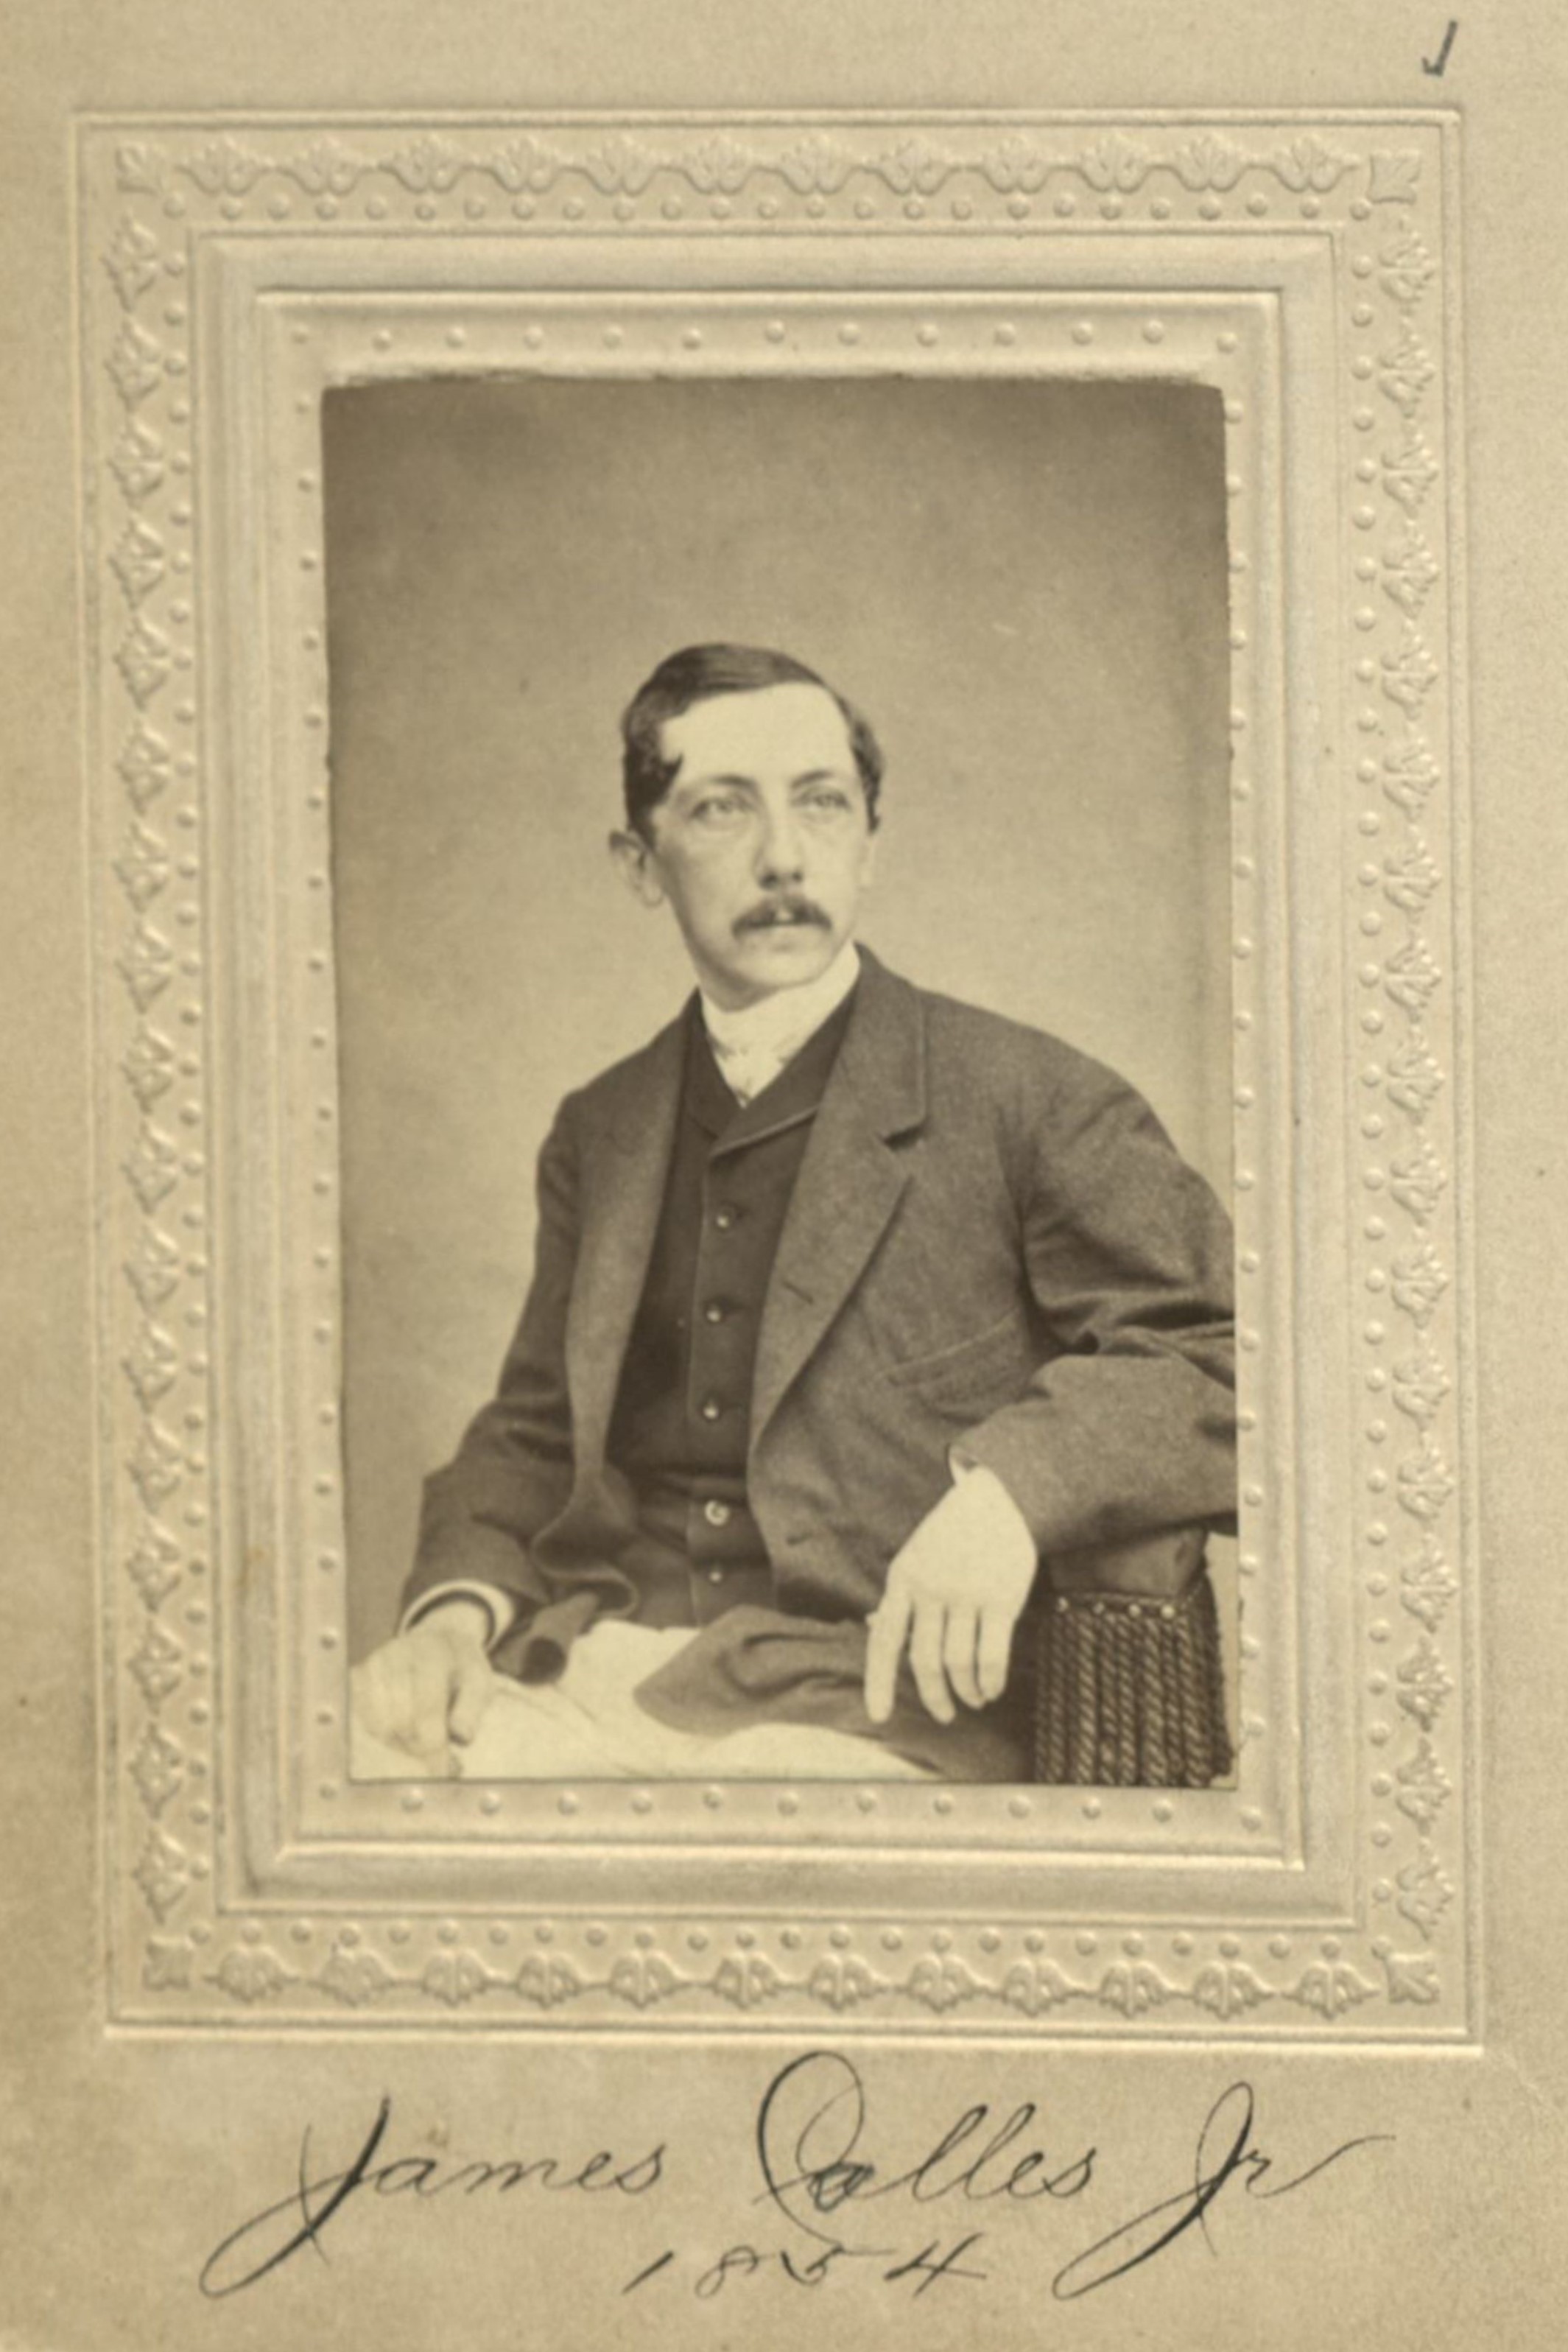 Member portrait of James Colles Jr.